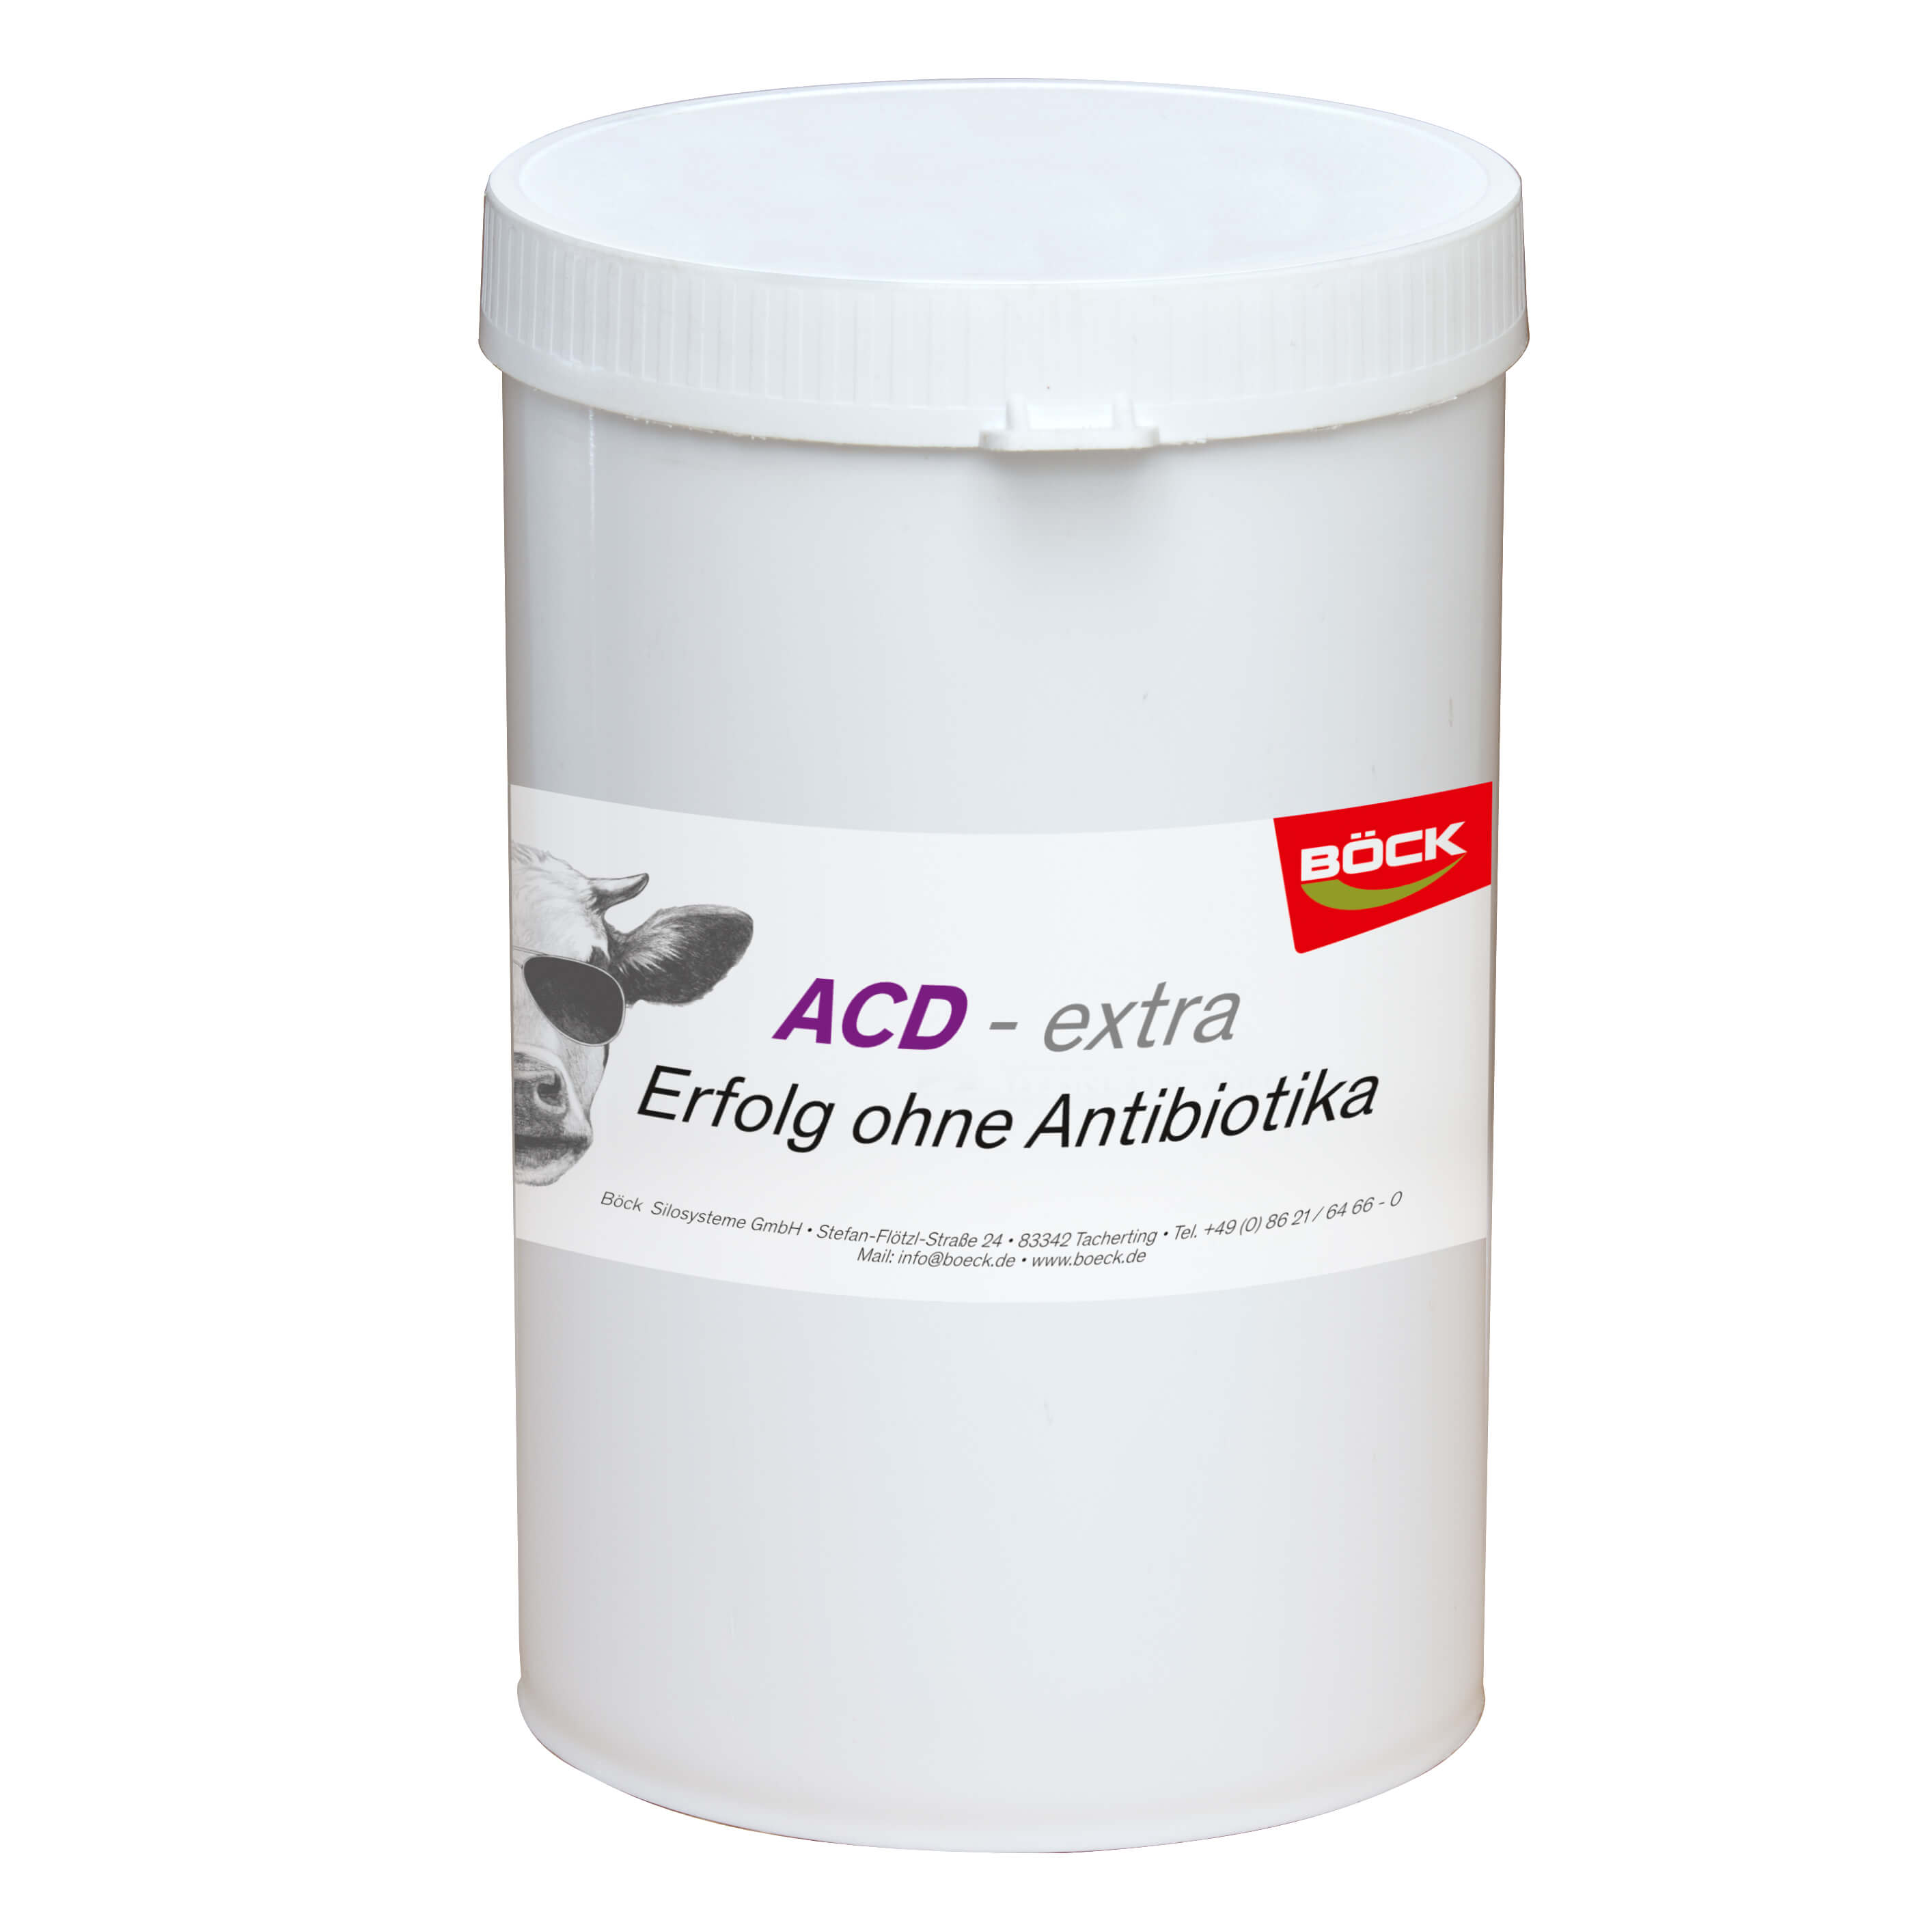 Kälber-Pille ACD - extra Inhalt: 24 Pillen